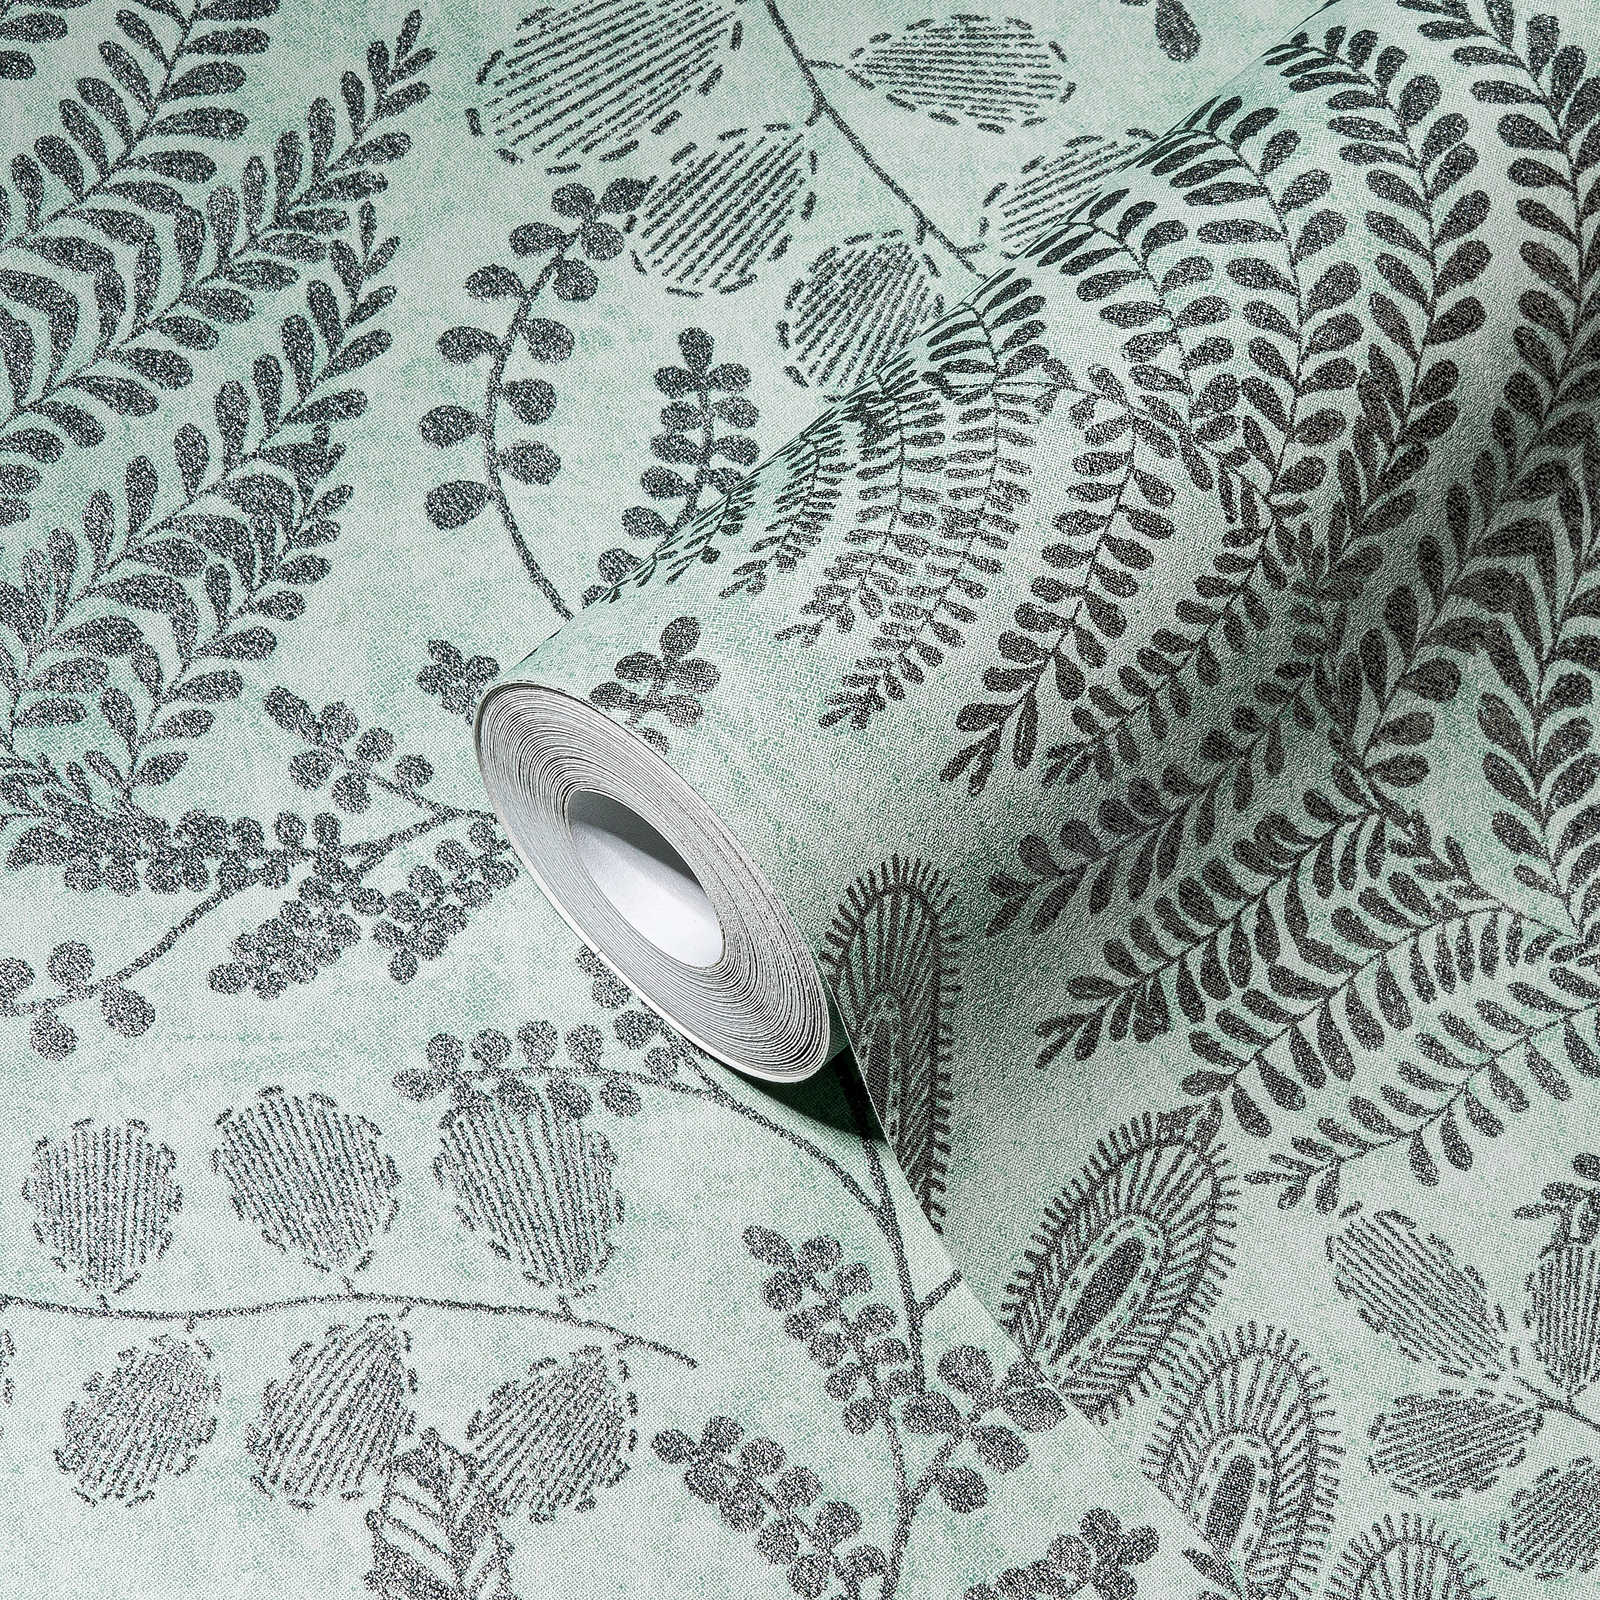             Skandi behang met bladmotief in metallic - blauw, groen
        